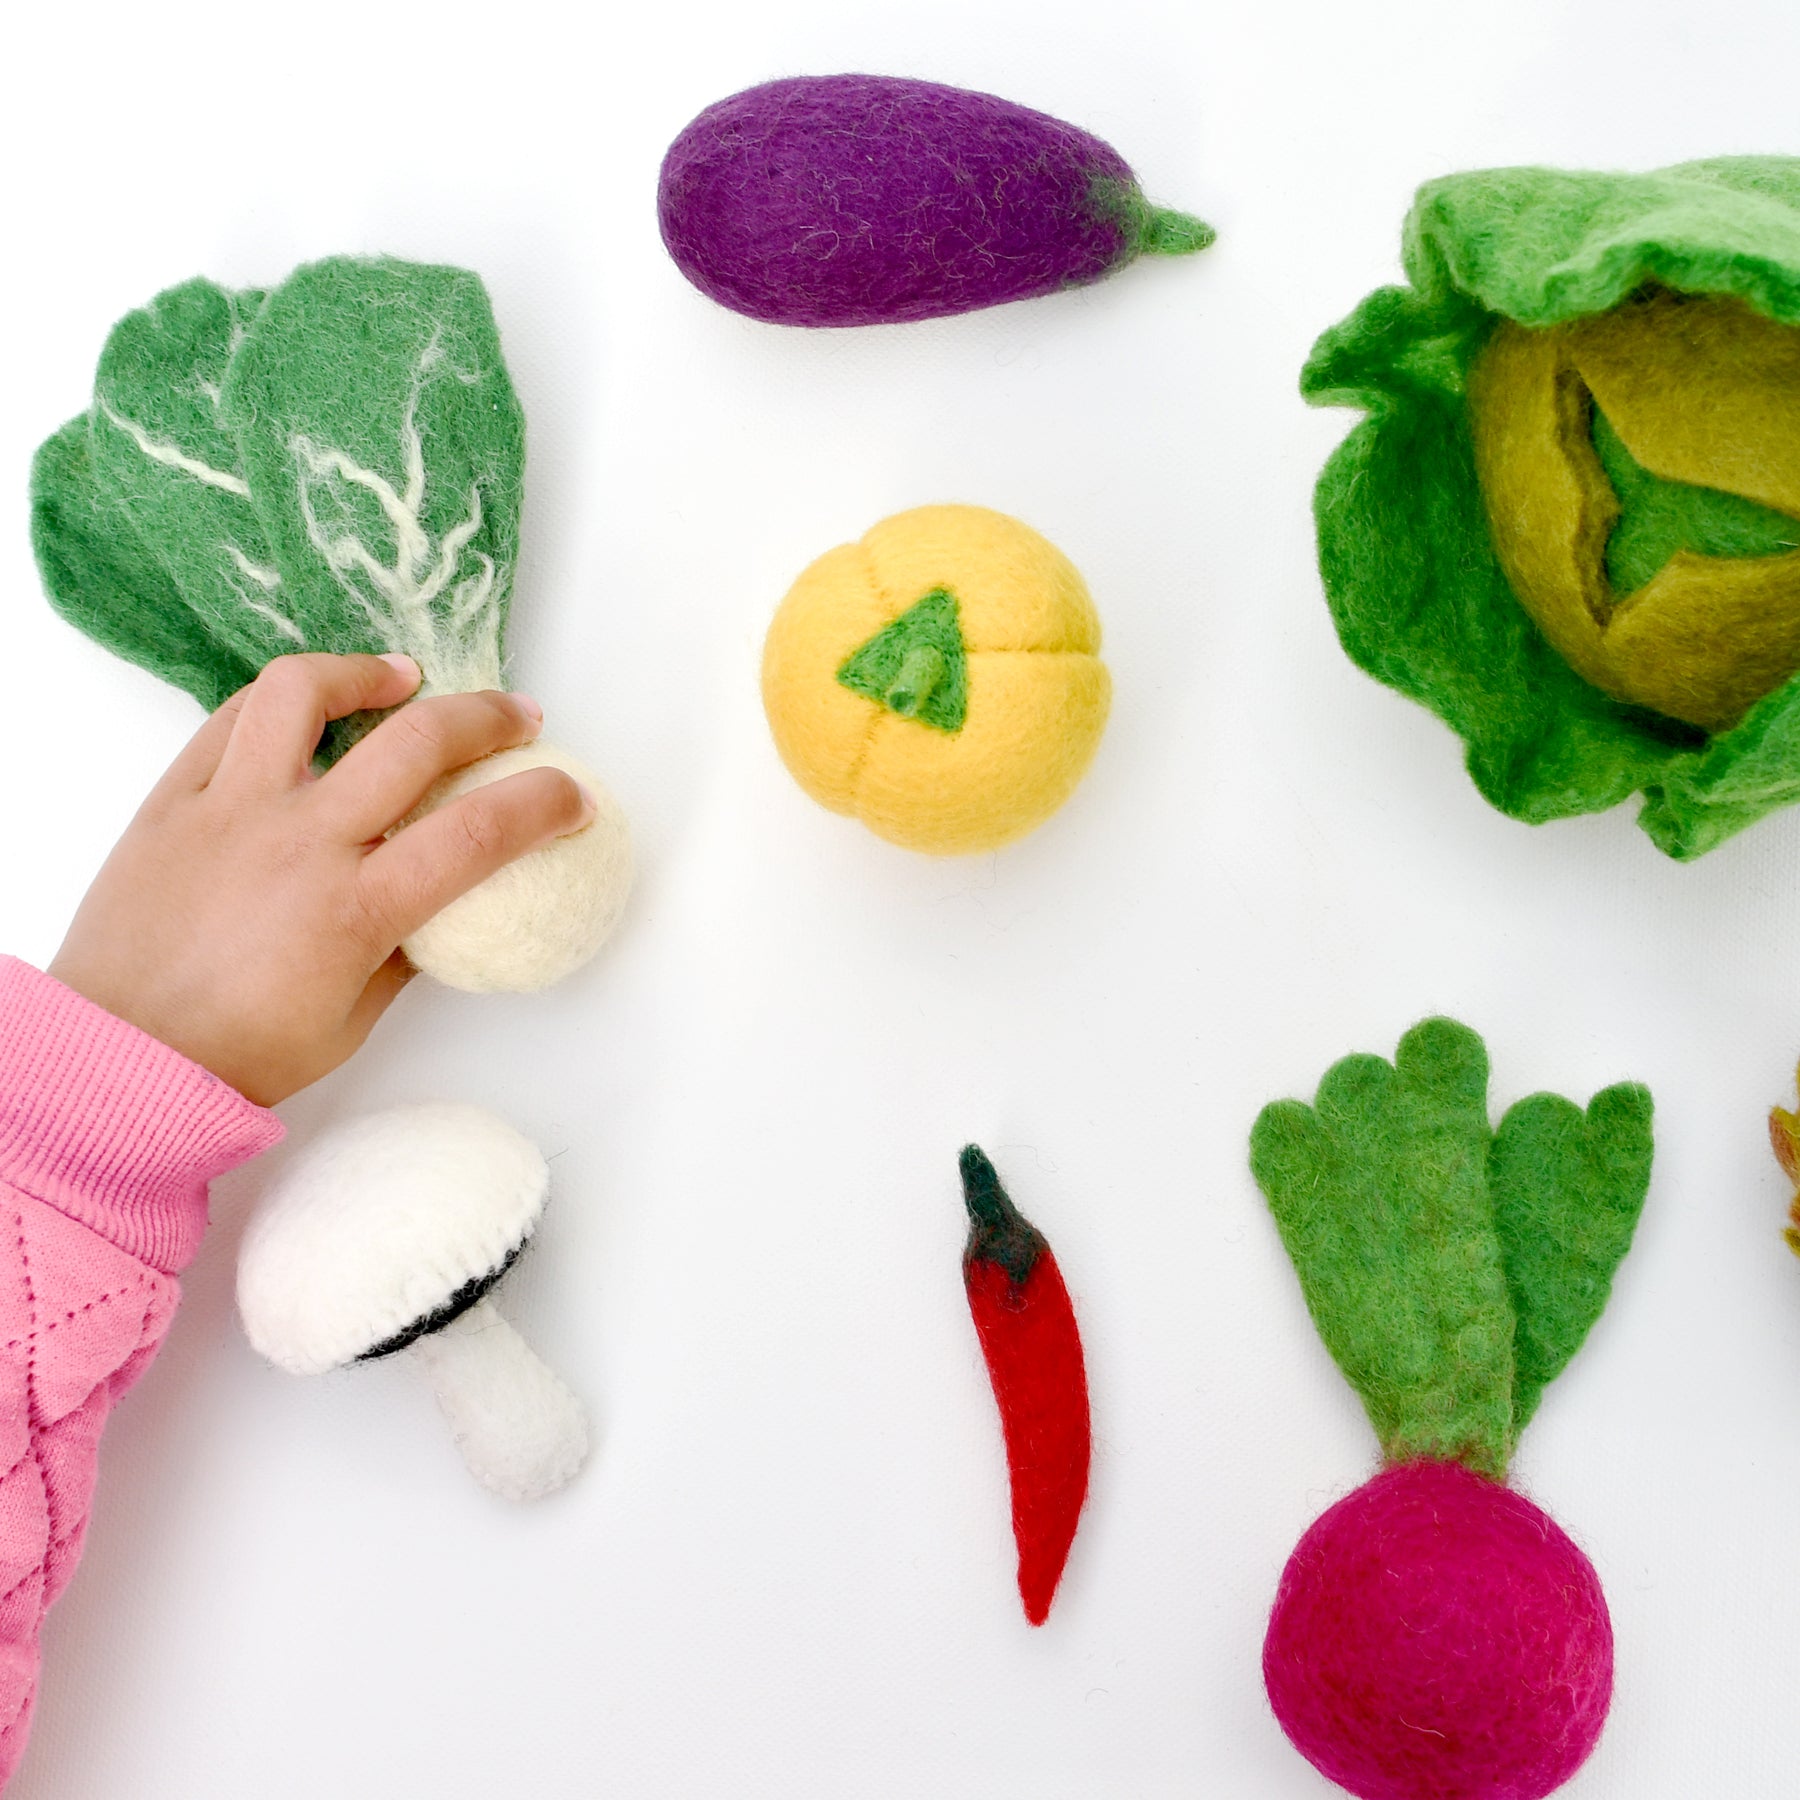 Felt Food Groups Play Food - Vegetables